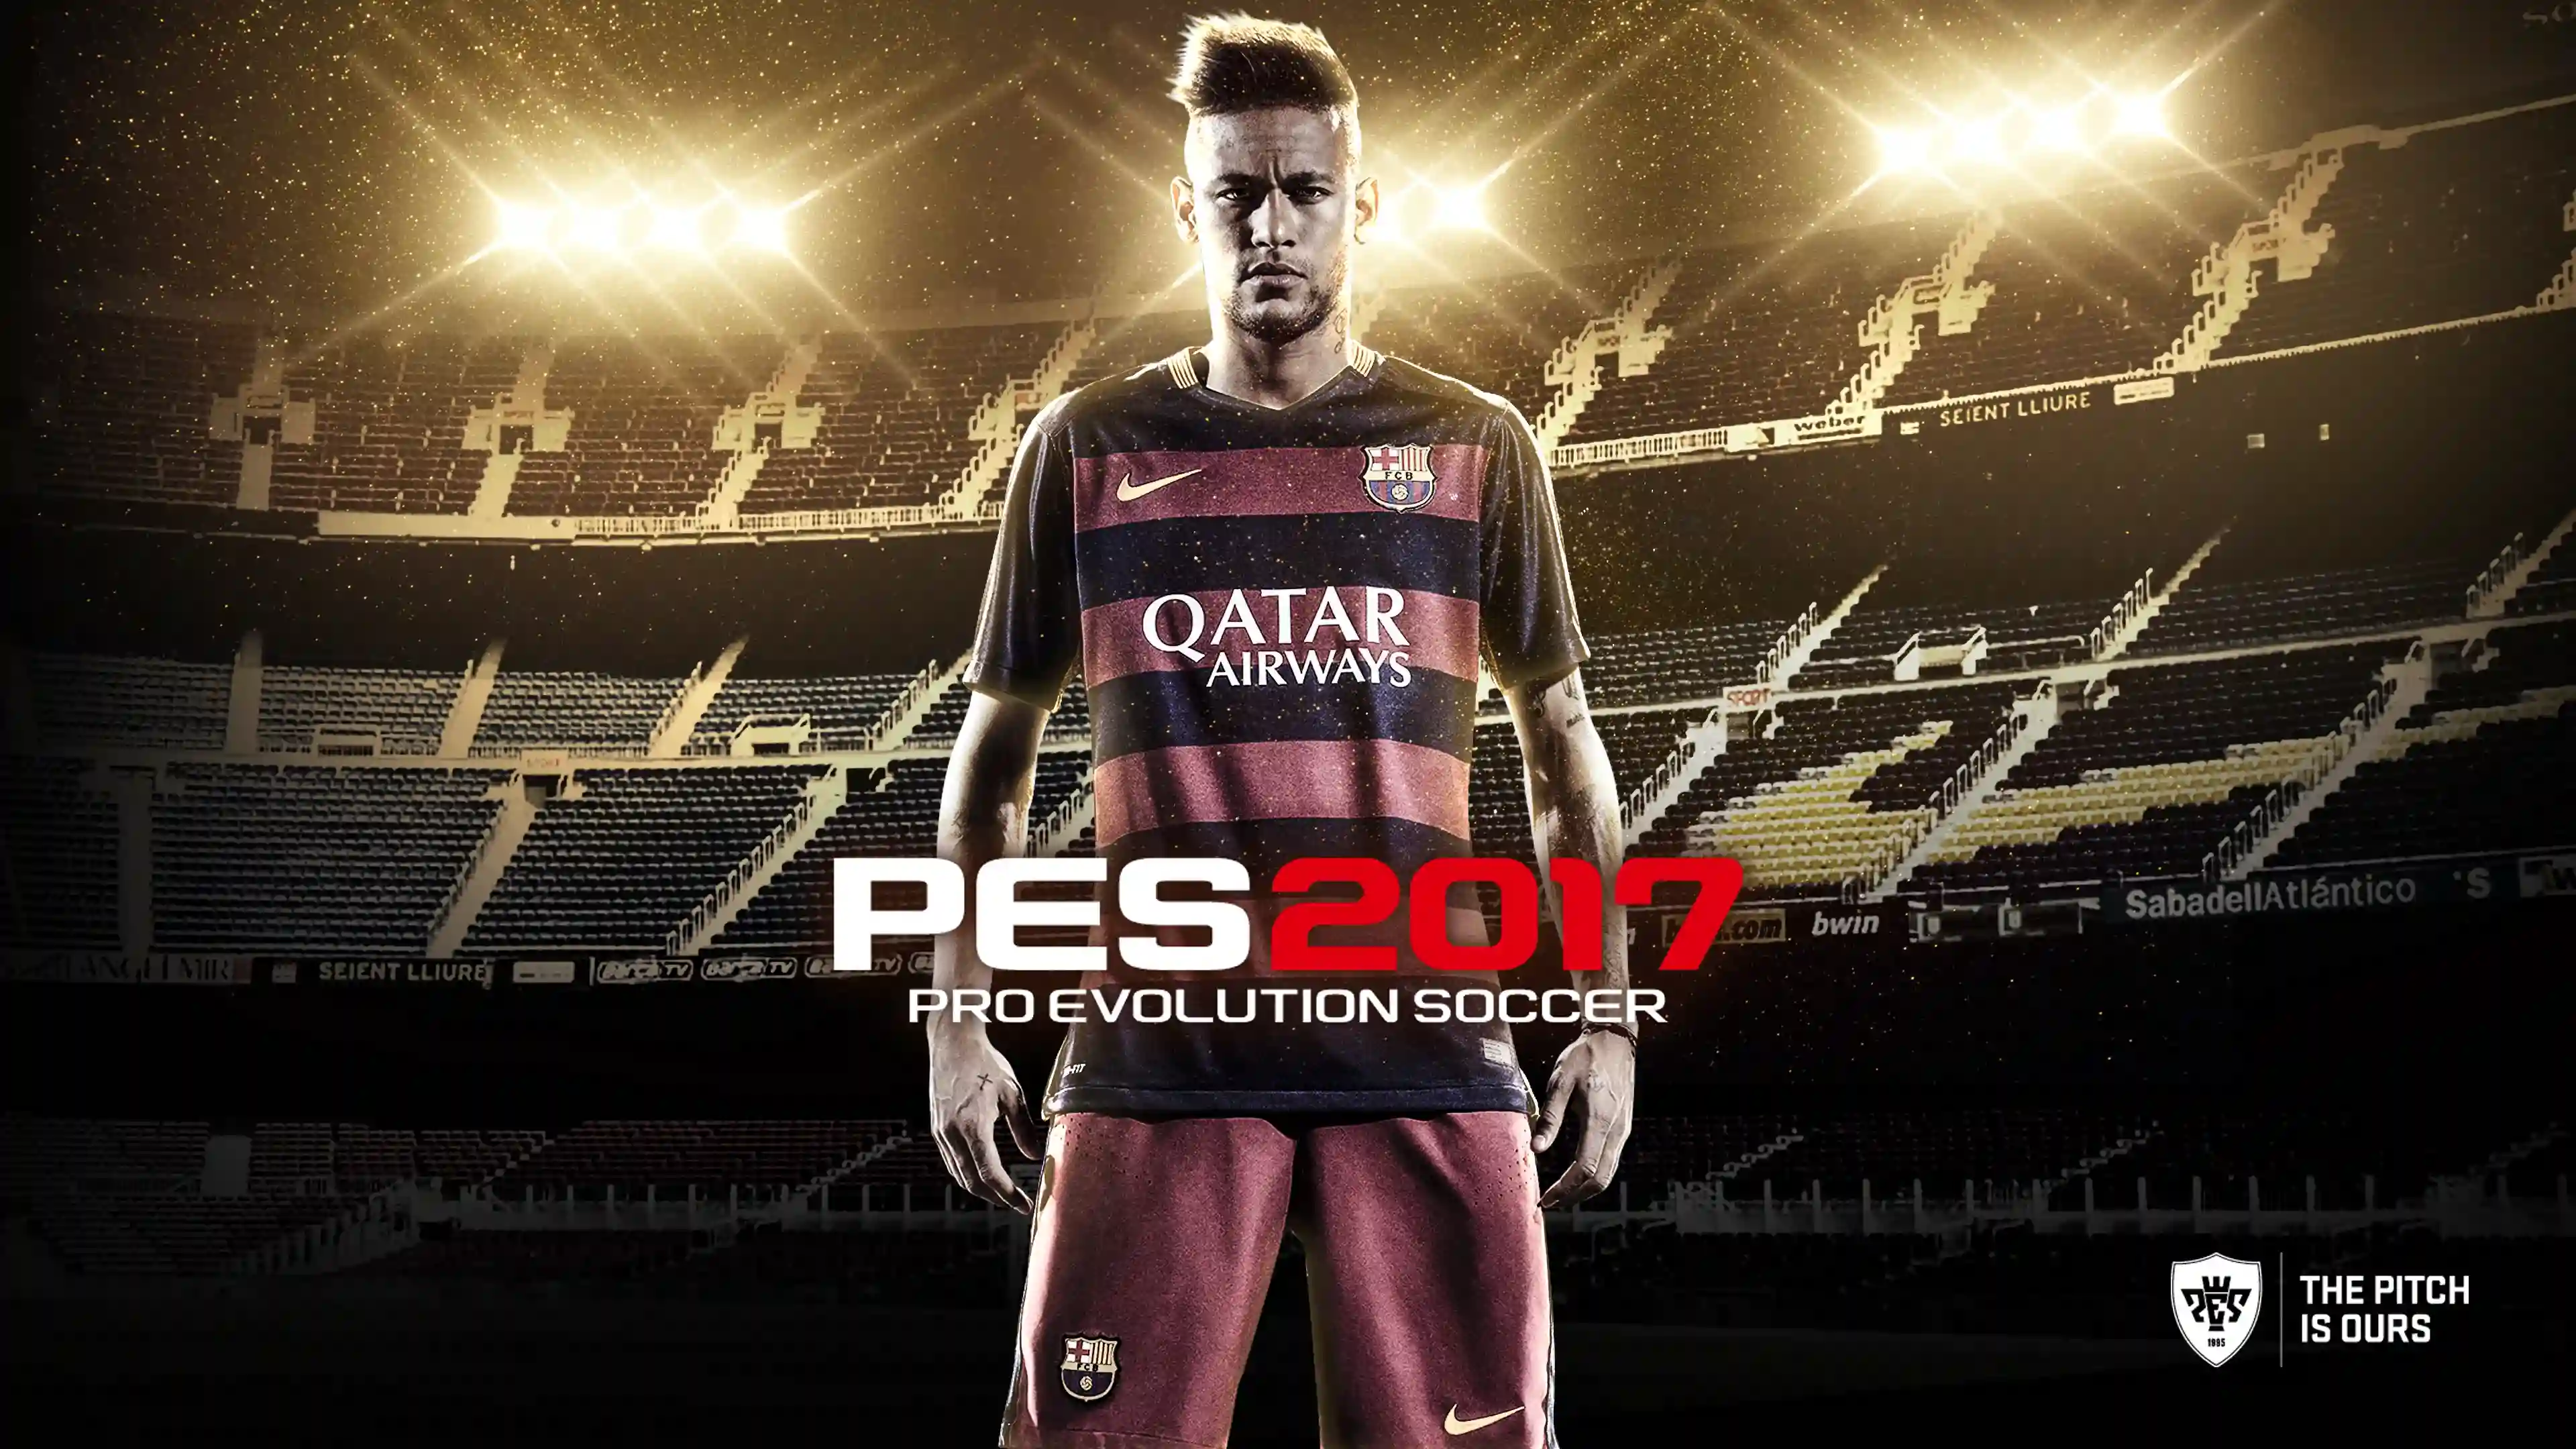 Pro Evolution Soccer PES 2017